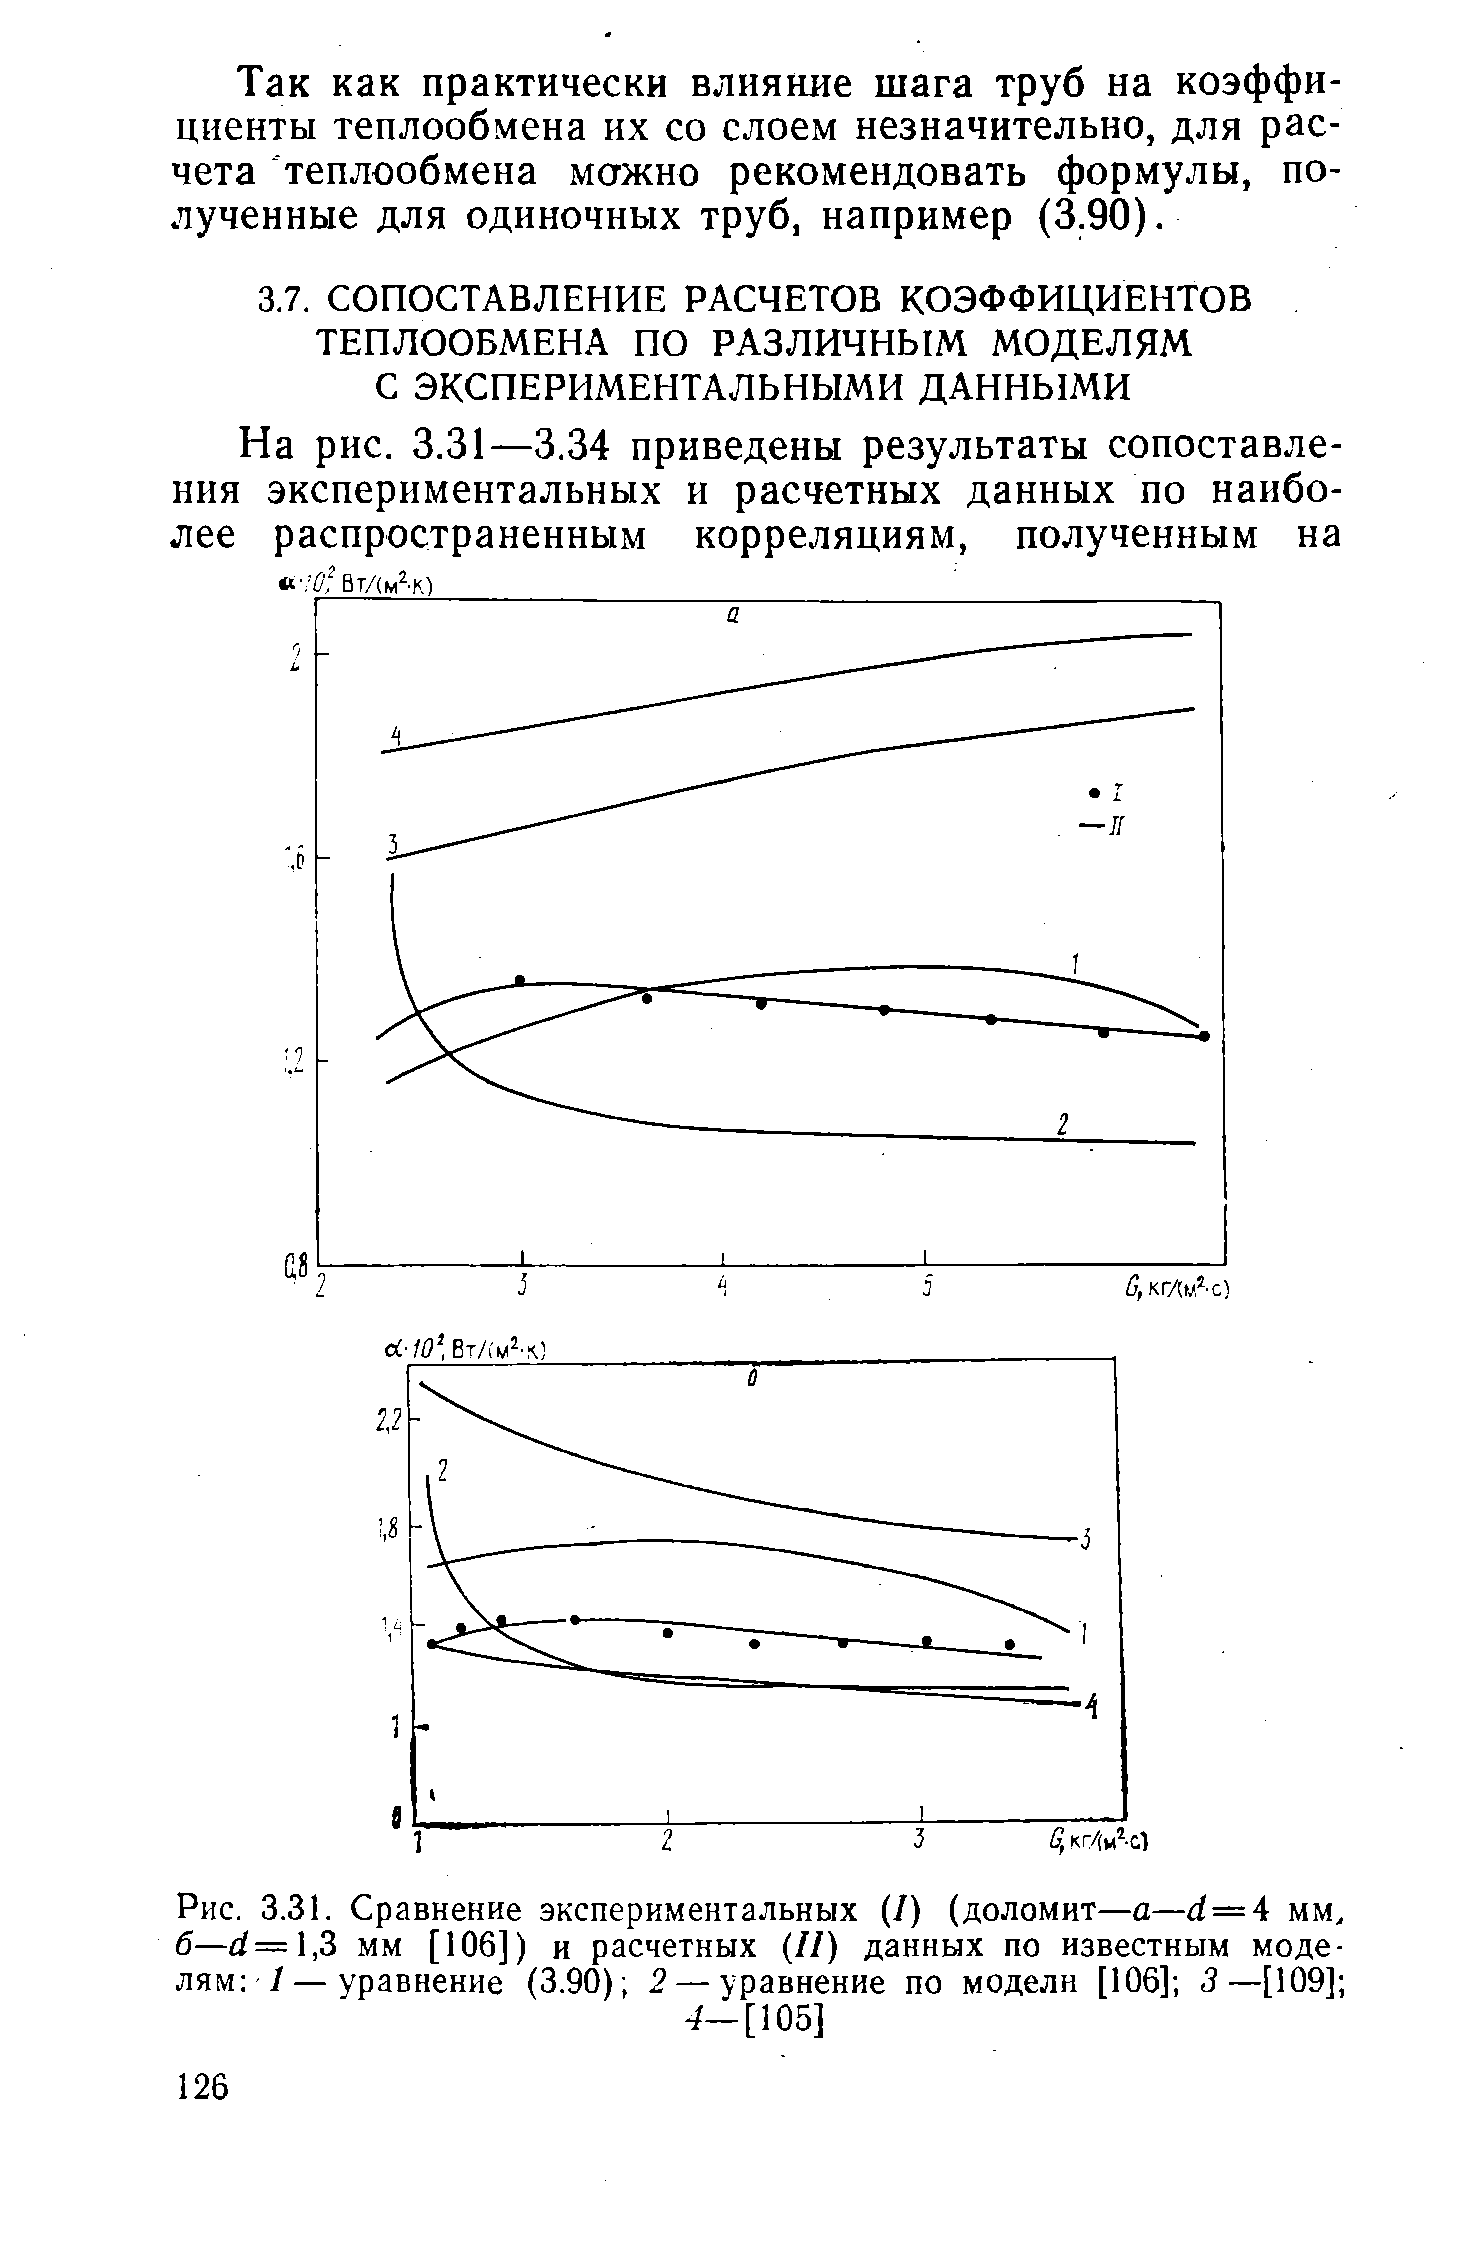 Рис. 3.31. Сравнение экспериментальных (I) (доломит—а—d=4 мм, б—d=l,3 мм [106]) и расчетных II) данных по известным моделям /—уравнение (3.90) 2 —уравнение по модели [106] 3—[109] 
